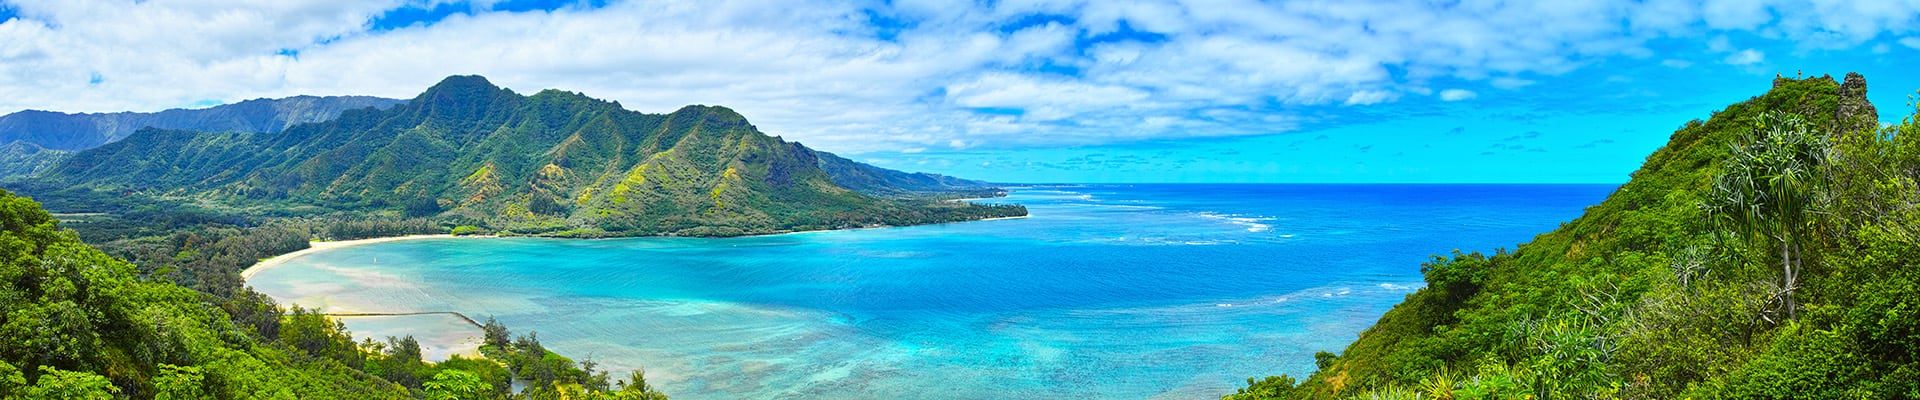 hawaiian cruise line